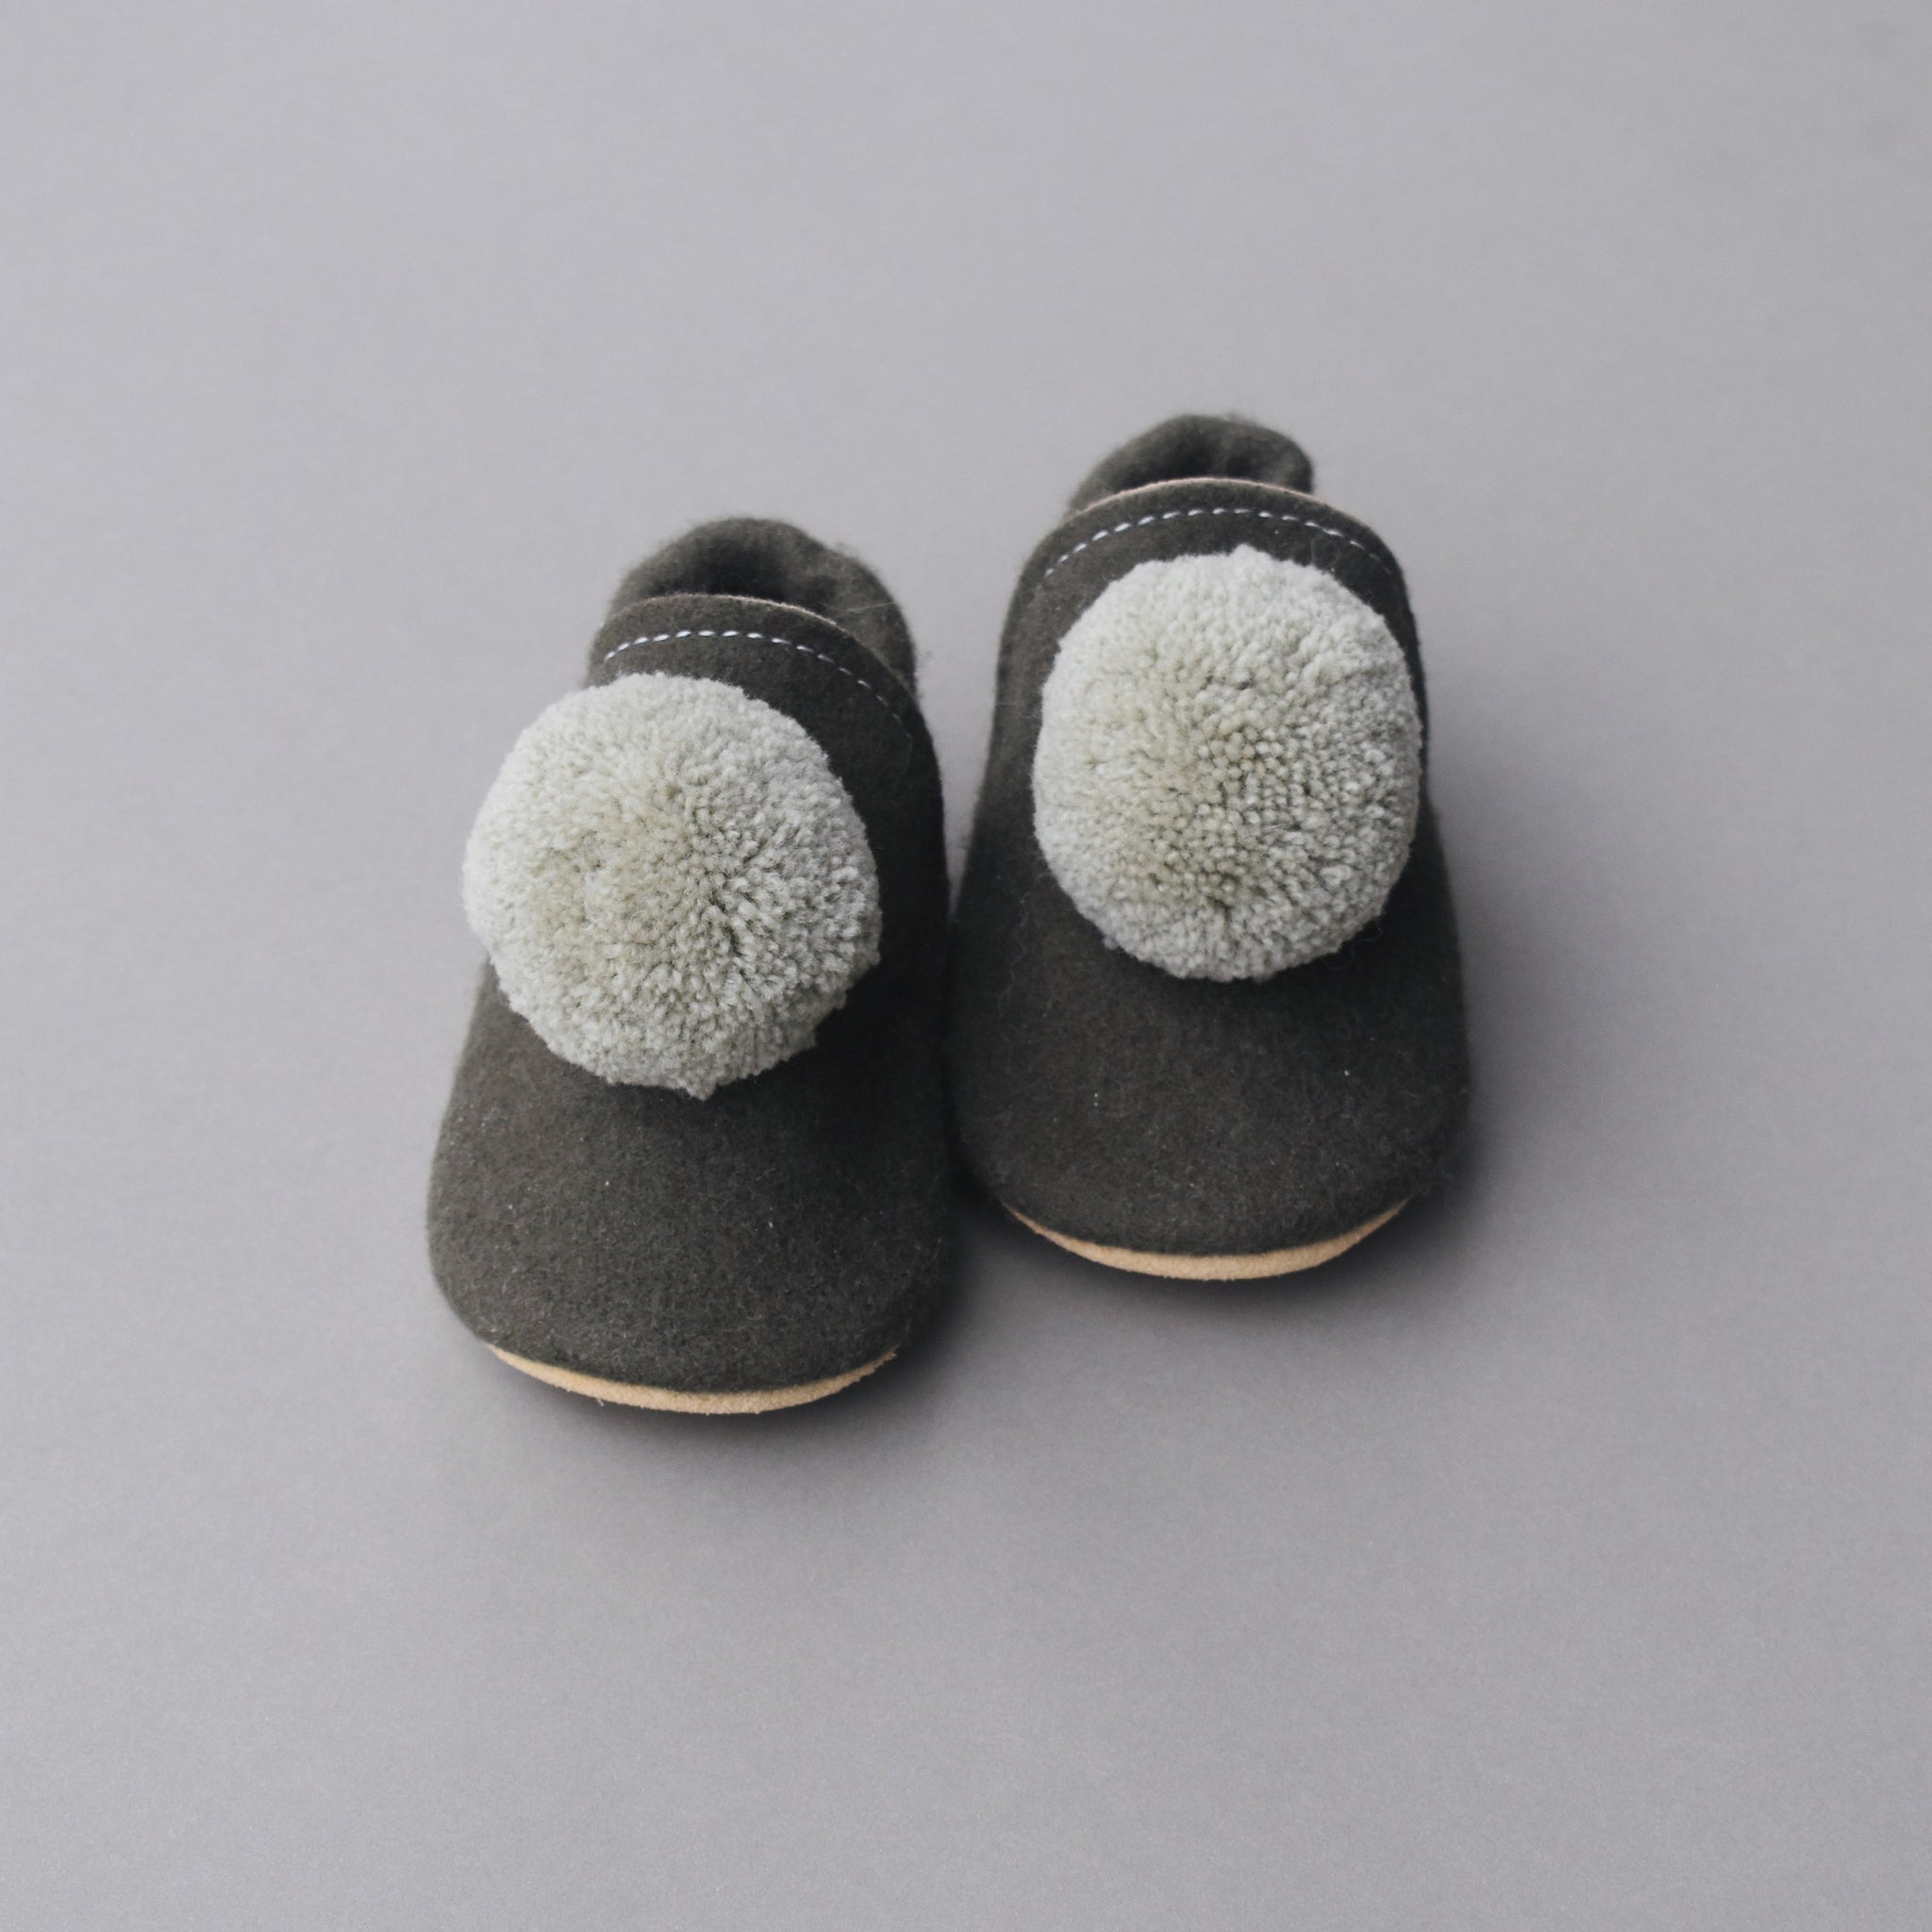 SIZE 5/6 (5.5") pompom shoes - 001